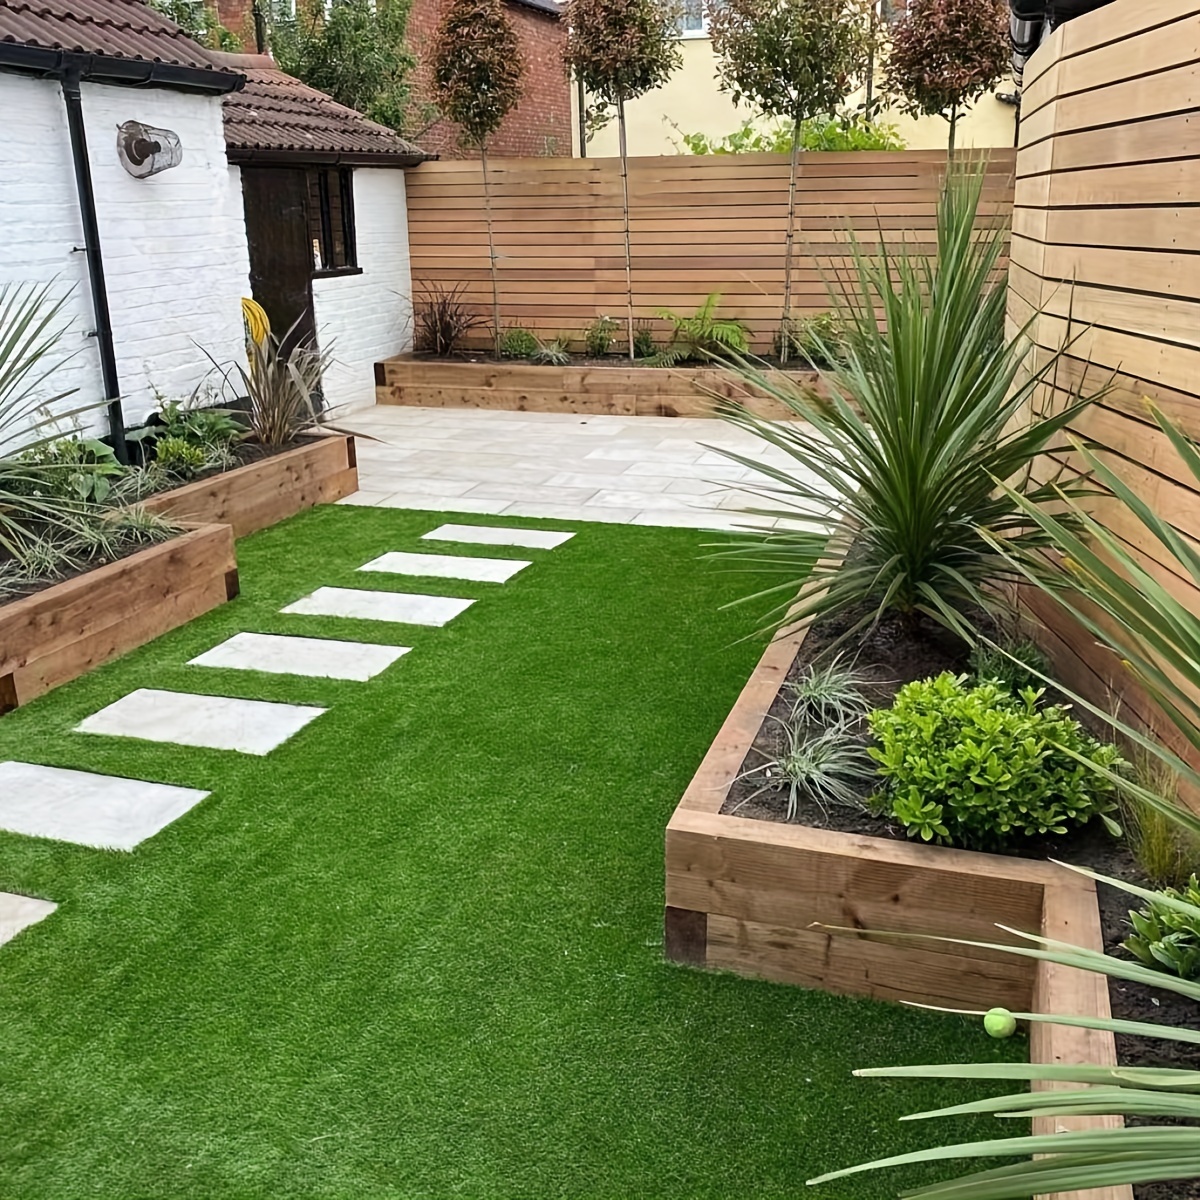  Goasis Lawn - Alfombra de pasto artificial, para interior y  exterior, tapete de césped sintético para el jardín : Patio, Césped y Jardín